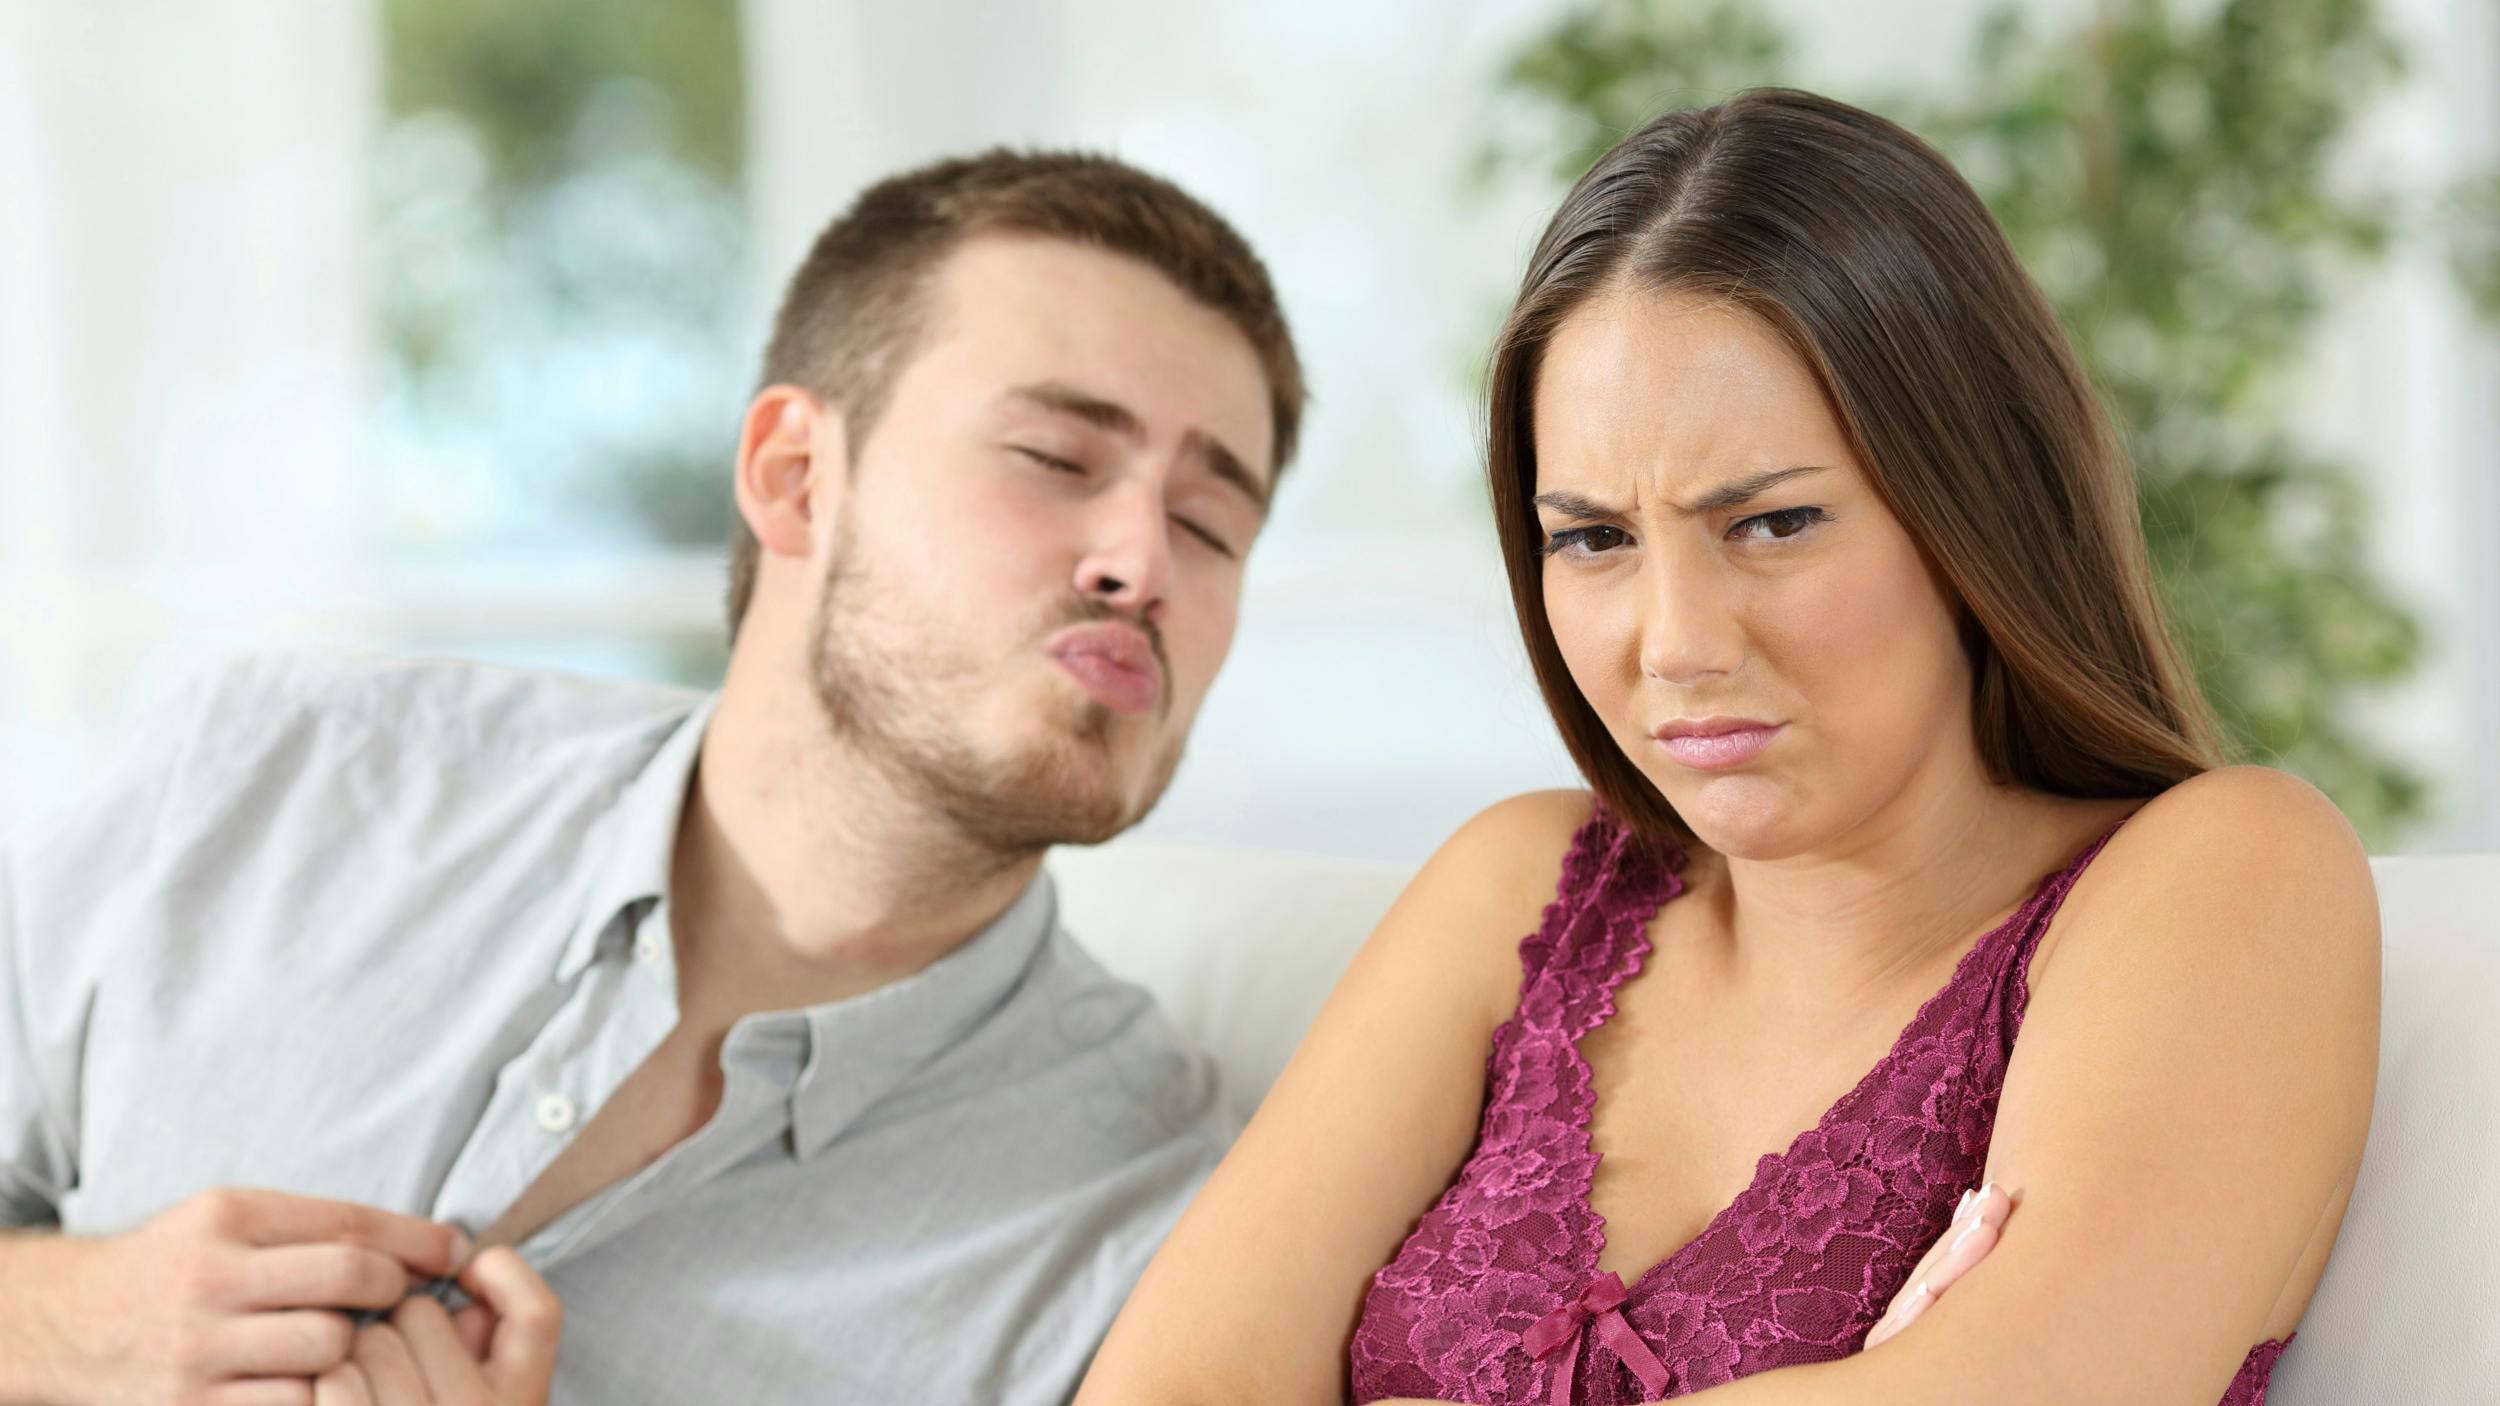 Mand sender kyssemund mod sin kæreste, der ser sur og trist ud